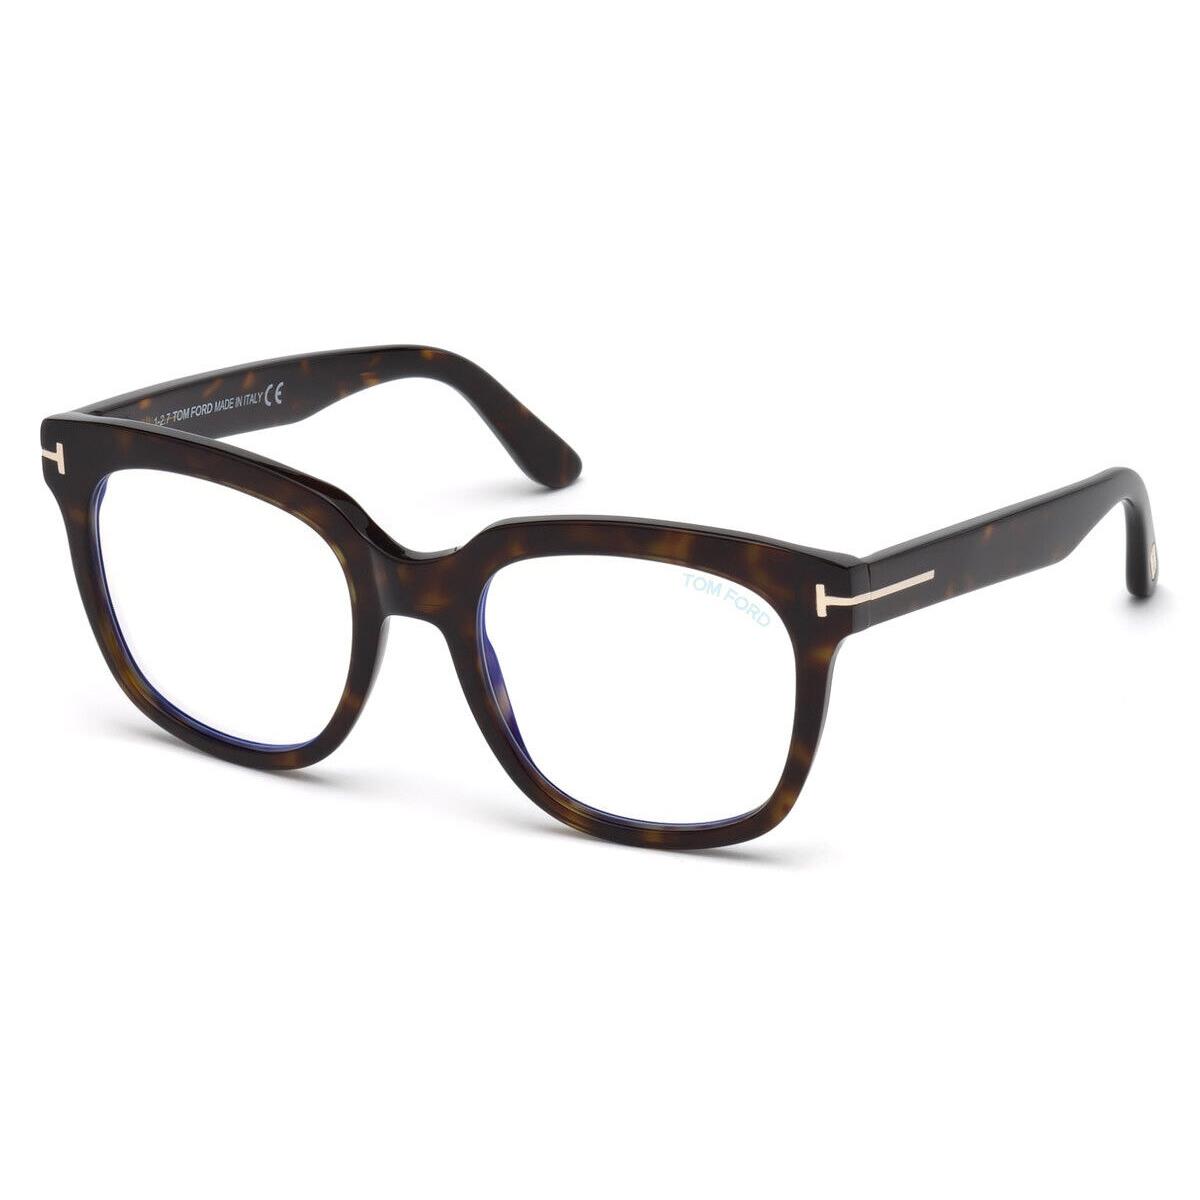 Tom Ford FT5537-B Eyeglasses Geometric 52mm